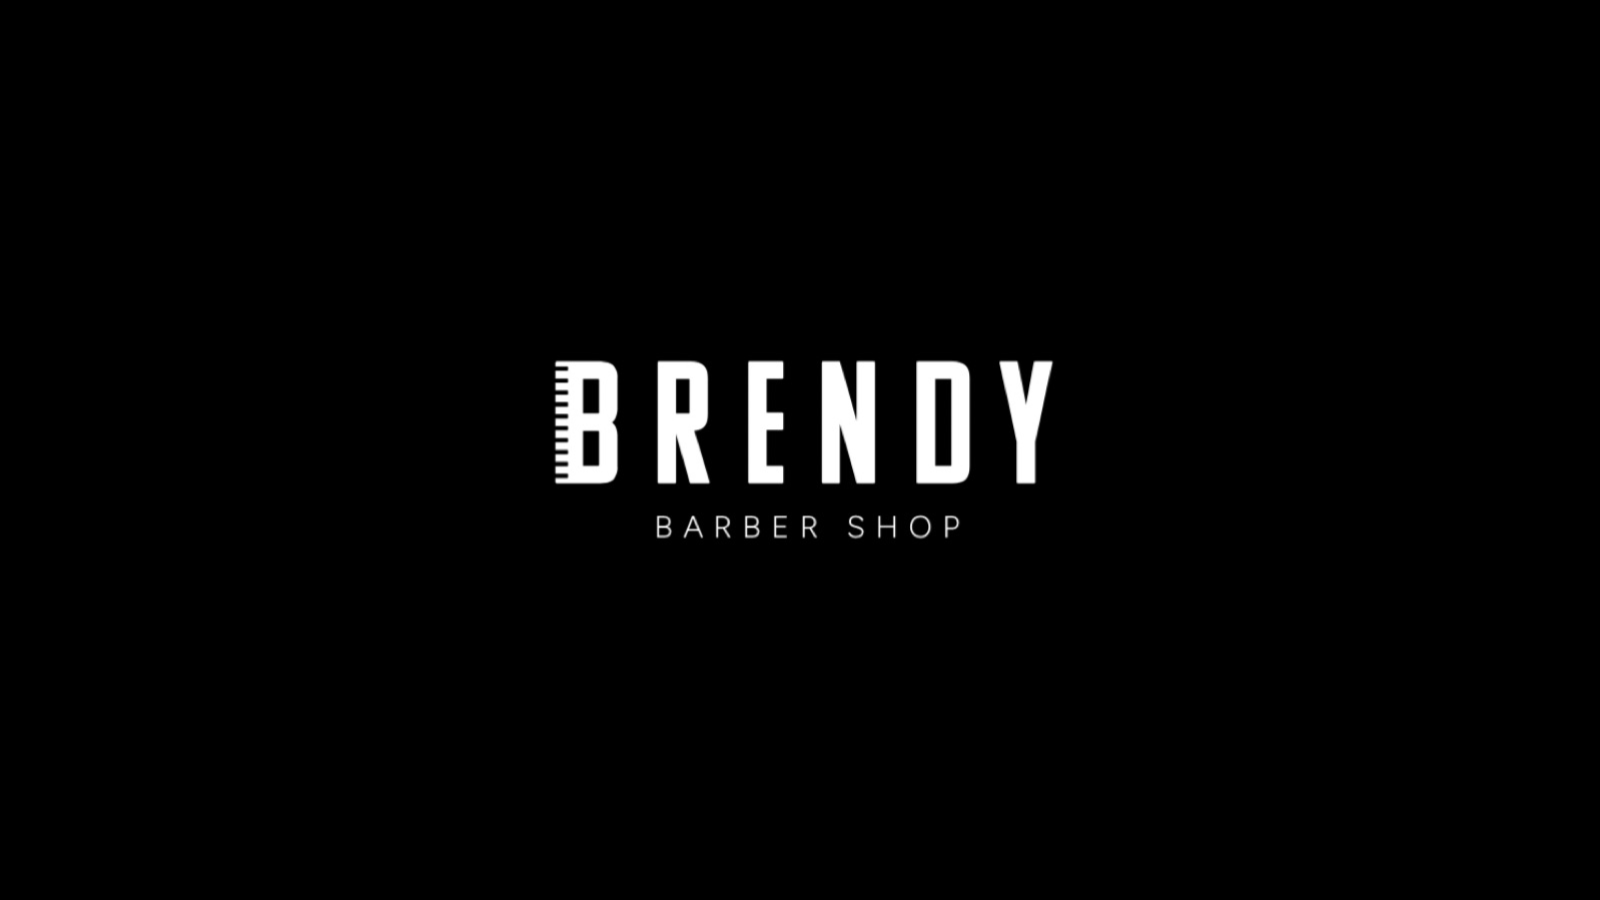 Brendy barber shop